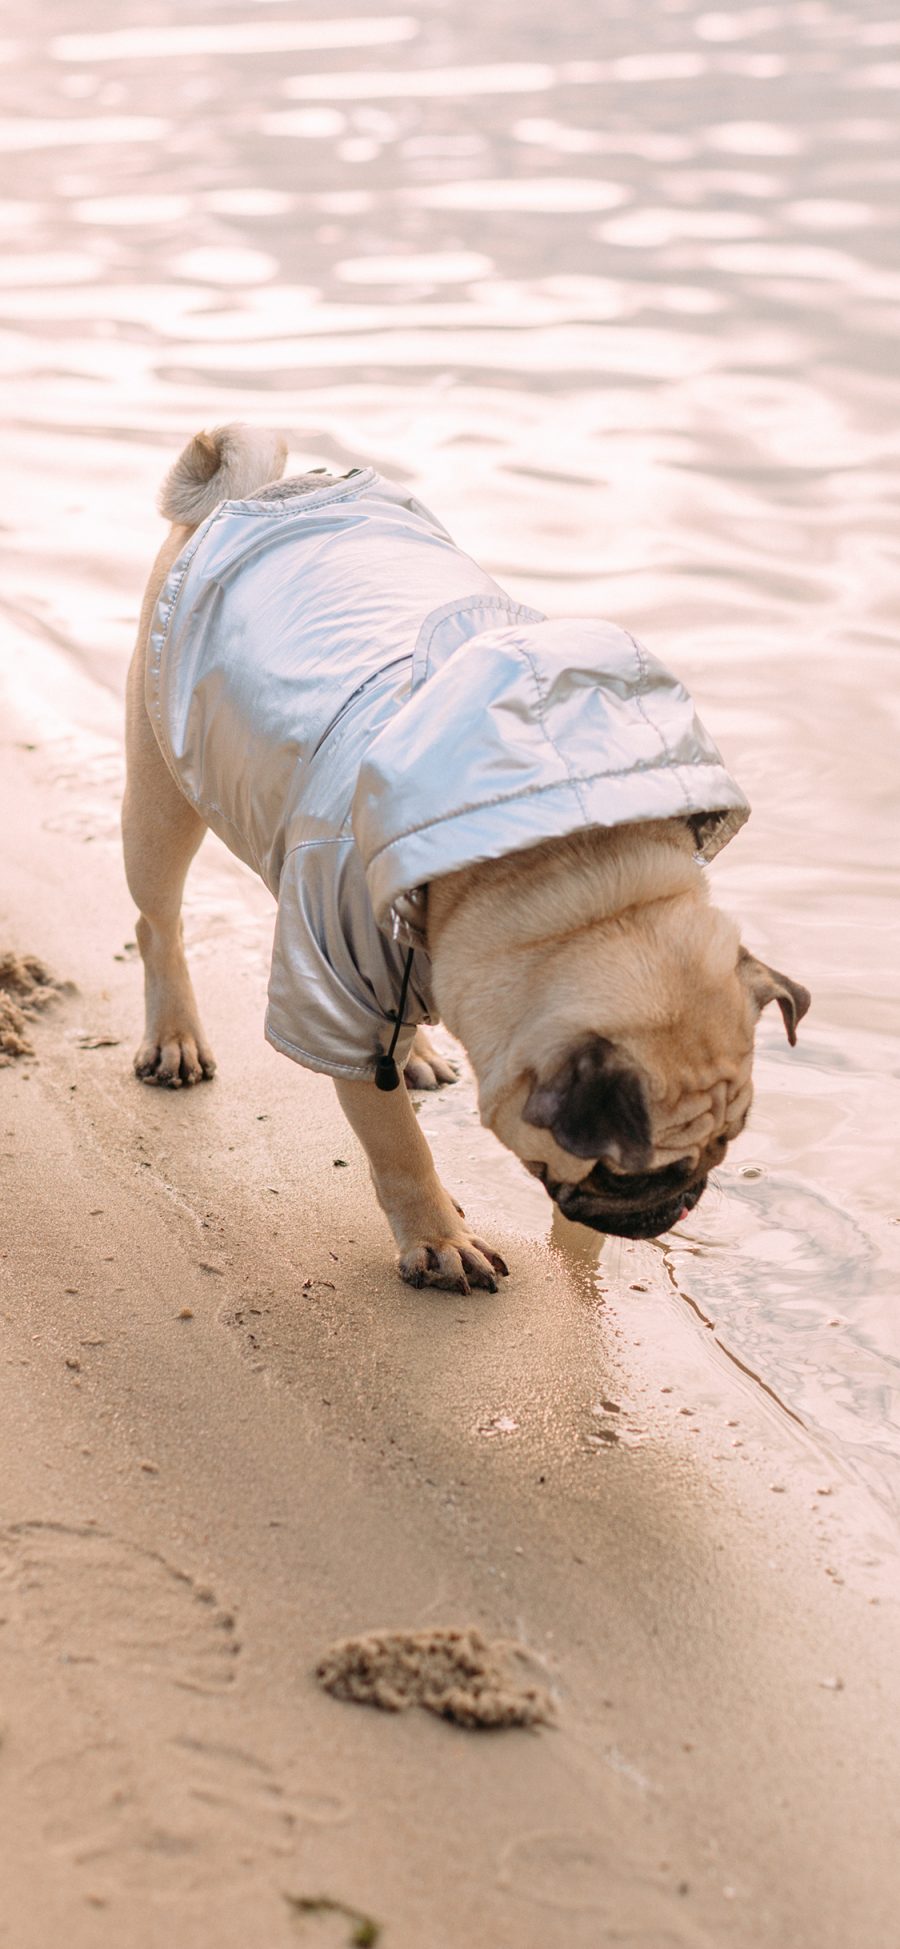 [2436×1125]海滩 沙滩 巴哥犬 宠物 汪星人 苹果手机壁纸图片